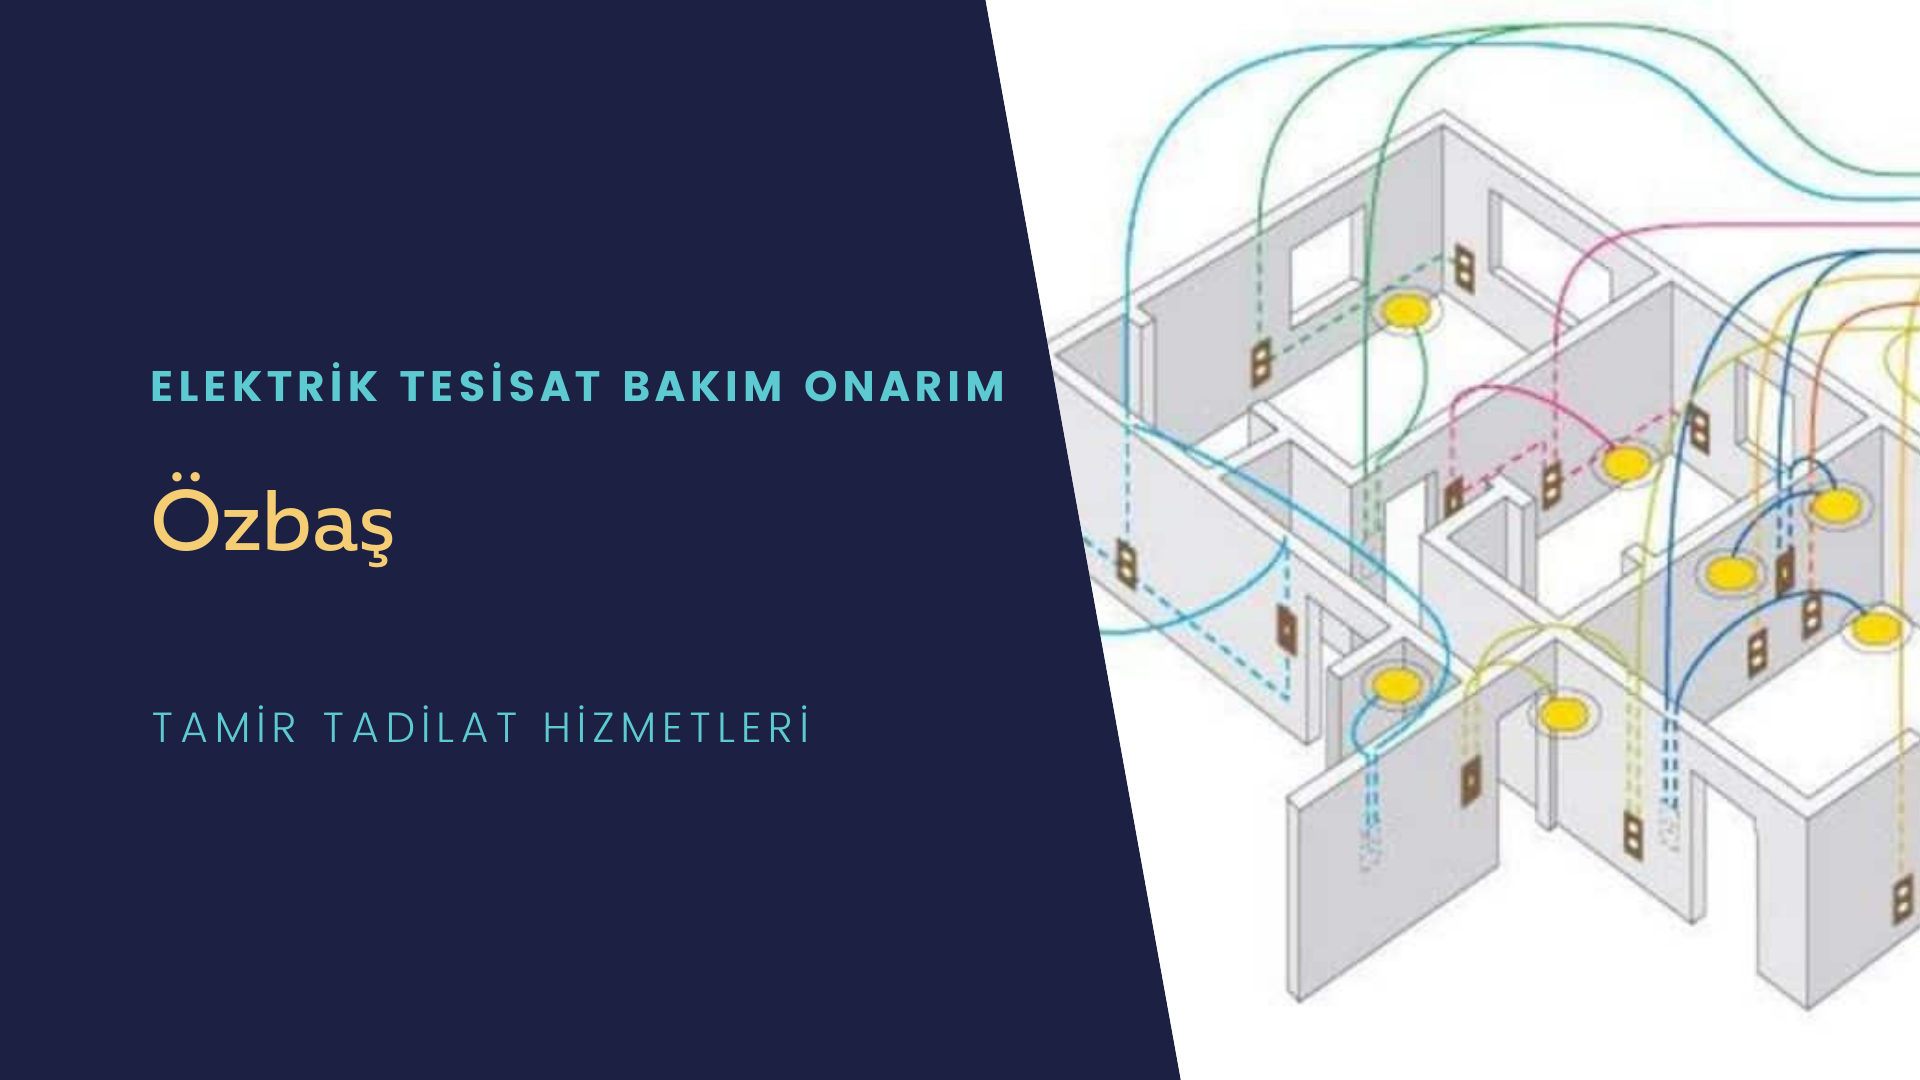 Özbaş'ta elektrik tesisatı ustalarımı arıyorsunuz doğru adrestenizi Özbaş elektrik tesisatı ustalarımız 7/24 sizlere hizmet vermekten mutluluk duyar.